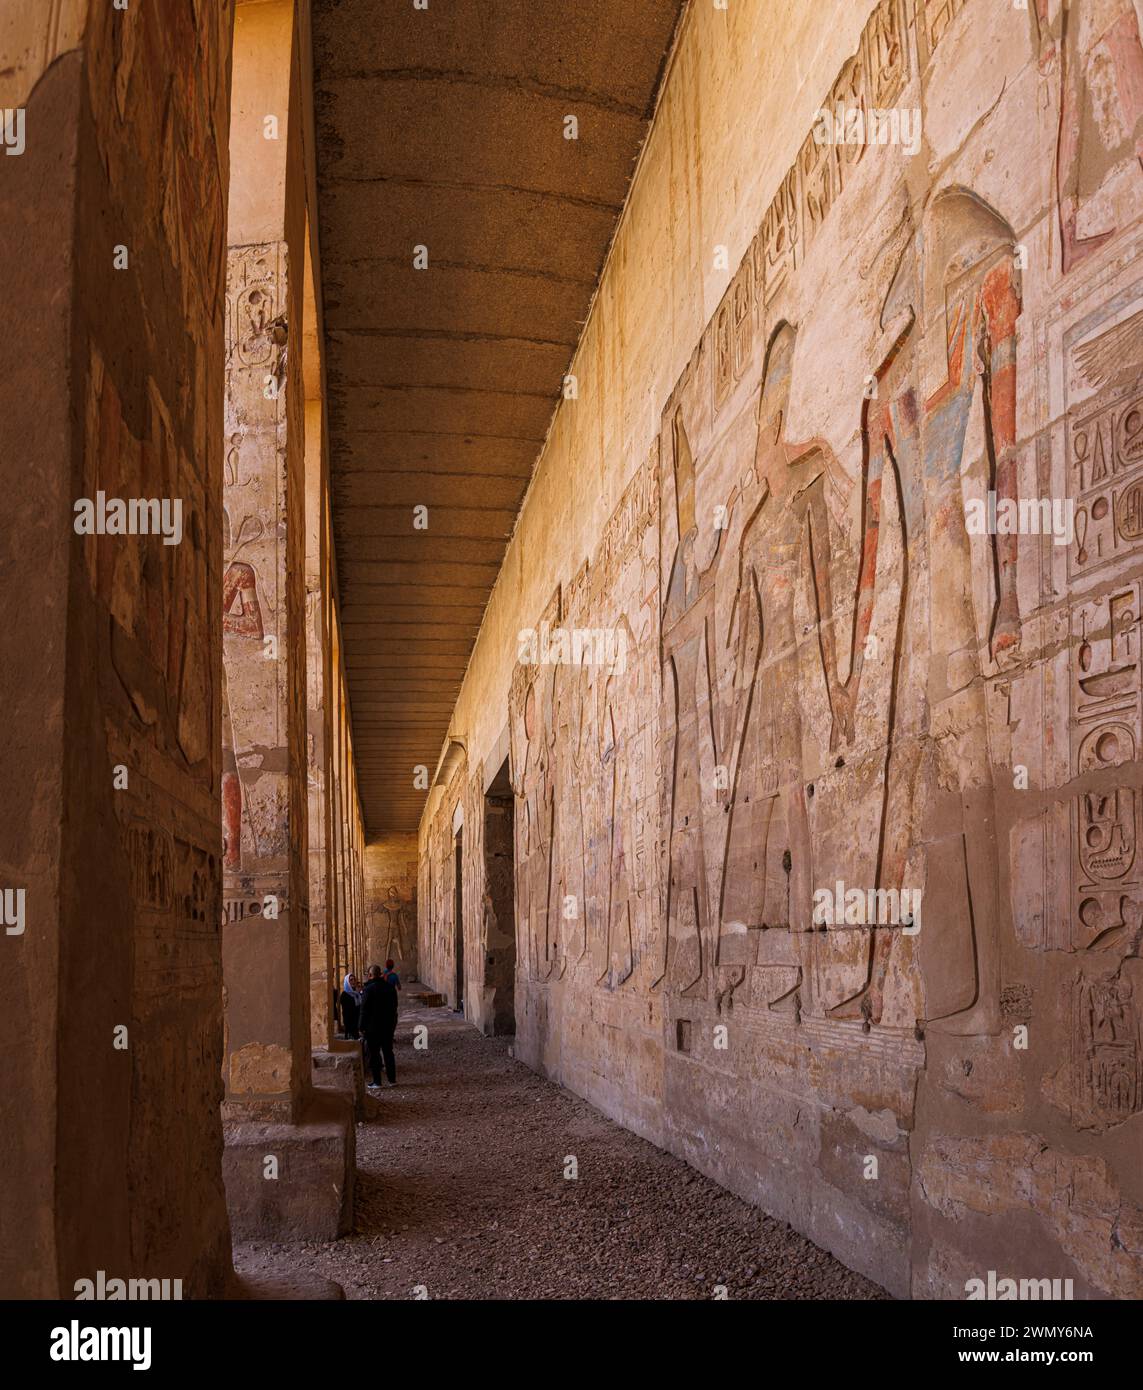 Egitto, Sohag, Abydos, città di pellegrinaggio dei faraoni dichiarata Patrimonio dell'Umanità dall'UNESCO, tempio di Seti i, bassorilievo sulle pareti esterne Foto Stock